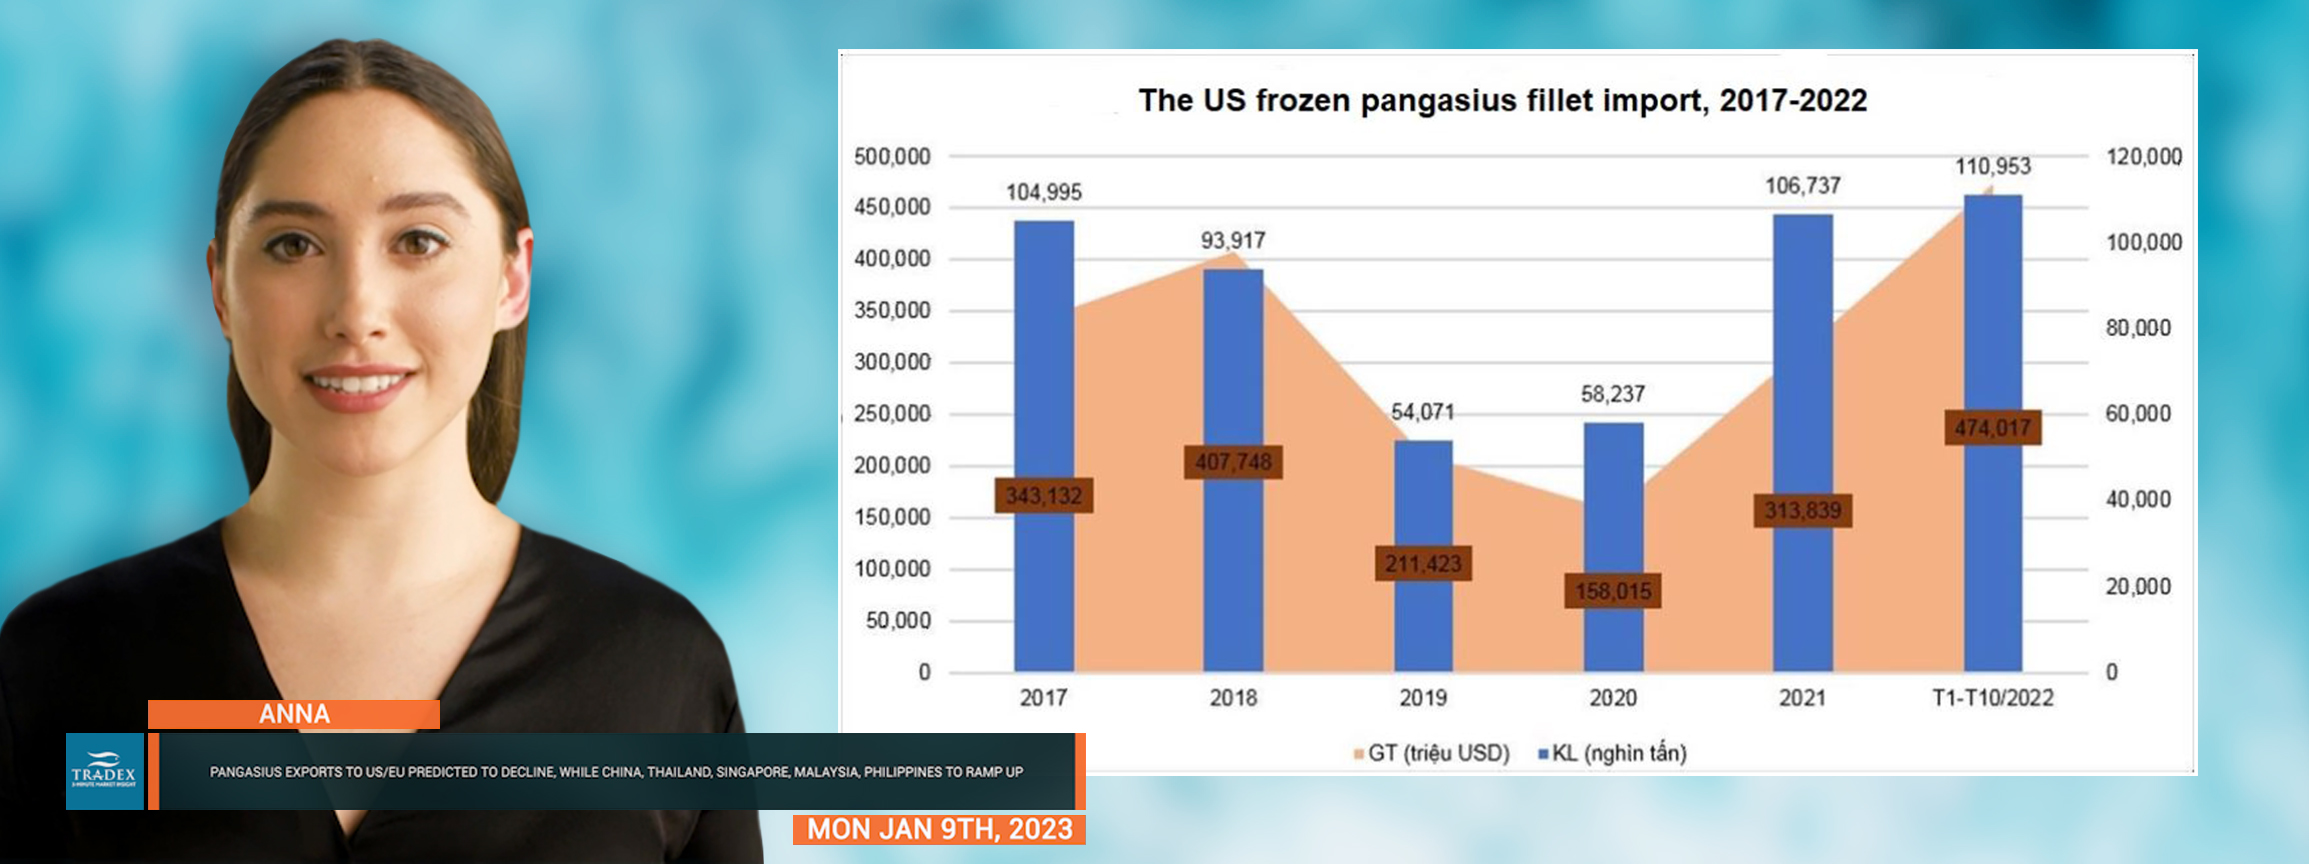 US Frozen Pangasius Fillet Import, 2017-2022